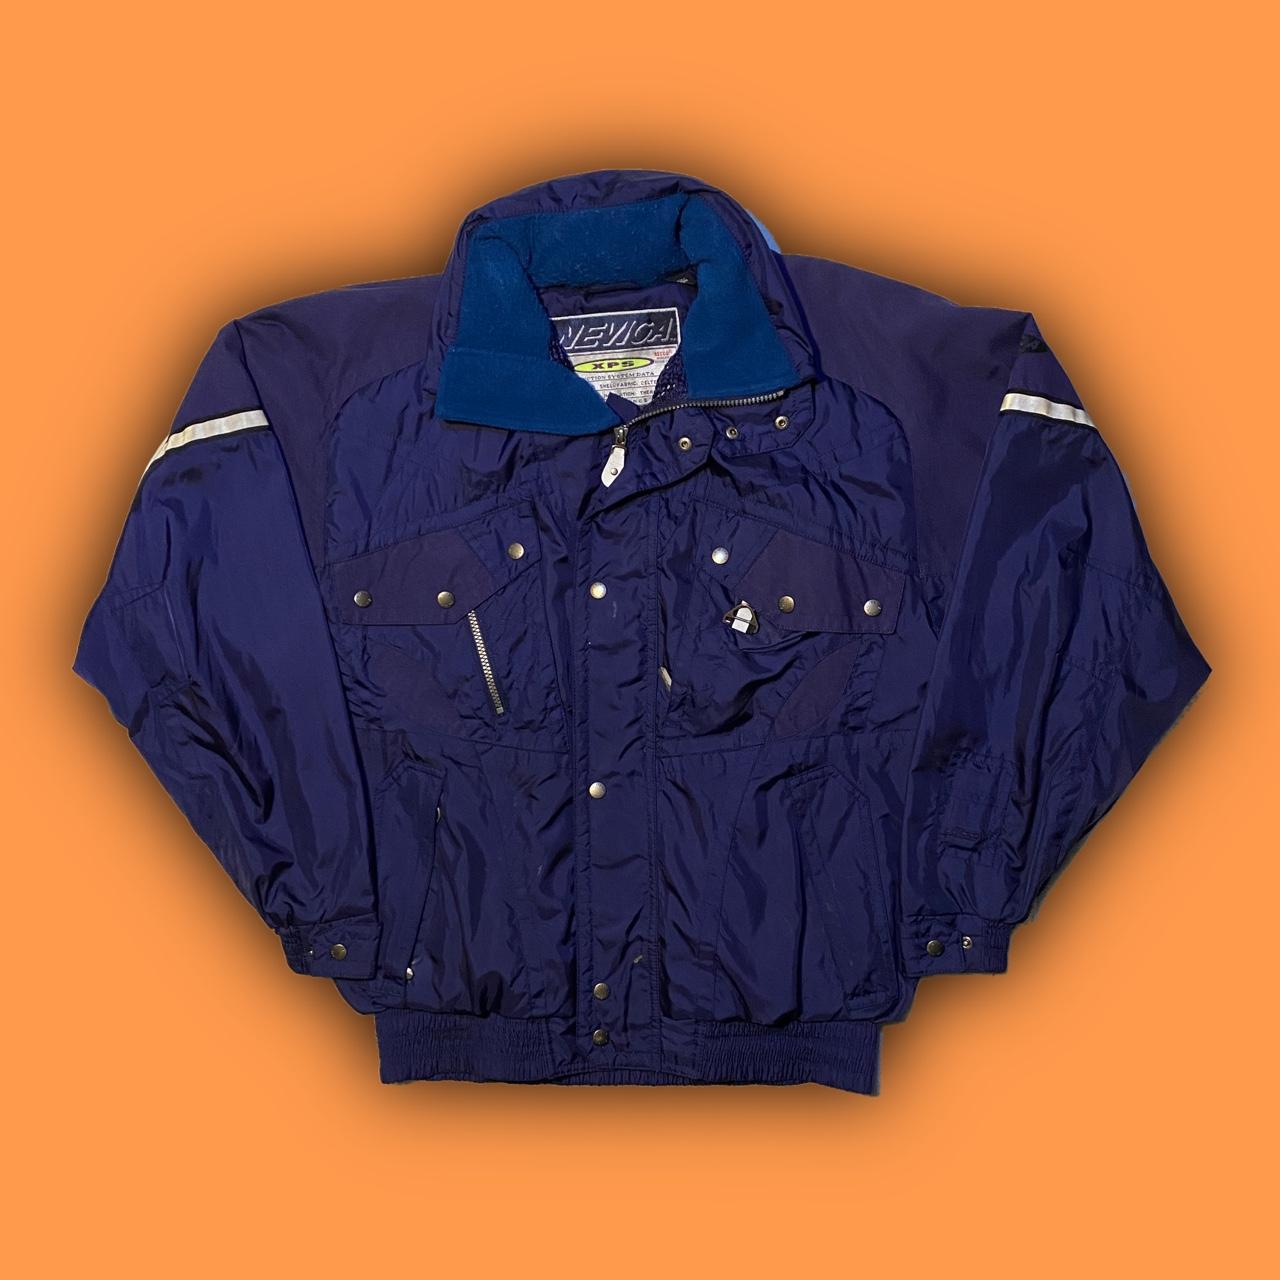 Product Image 1 - Nevica 90s jacket 

Size: fits